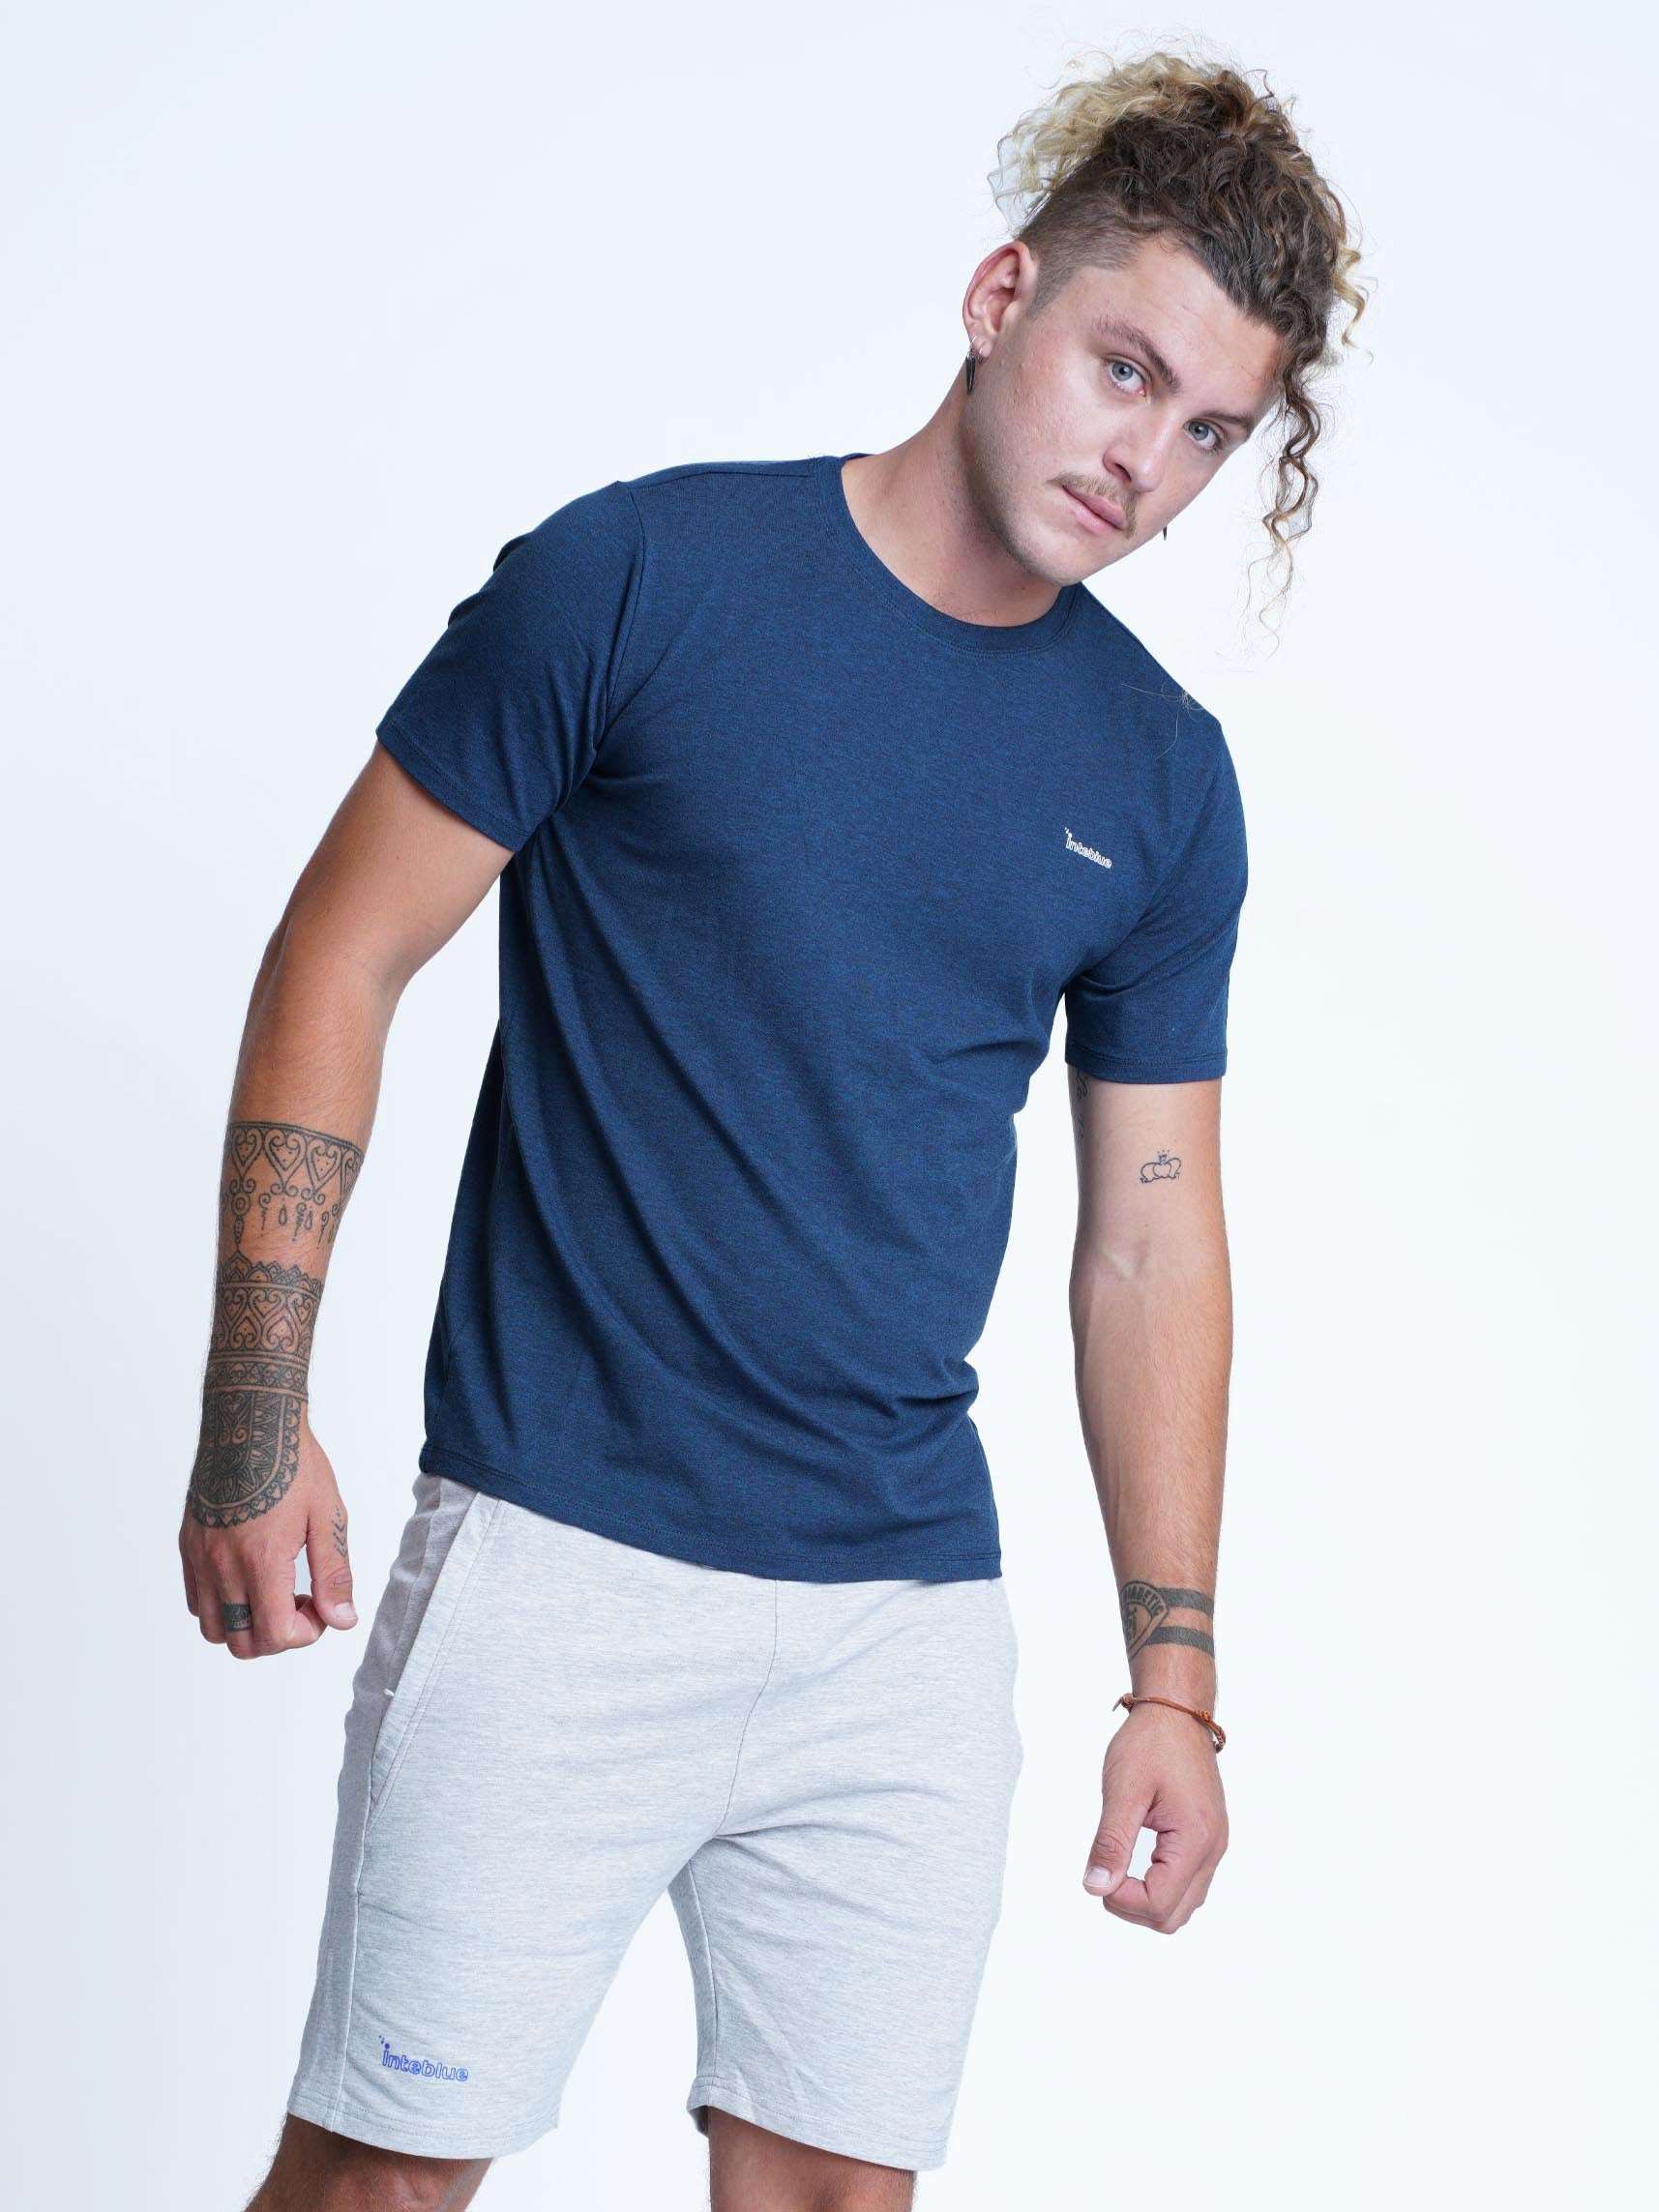 Men's Slim Fit T-Shirt Round Neck - inteblu